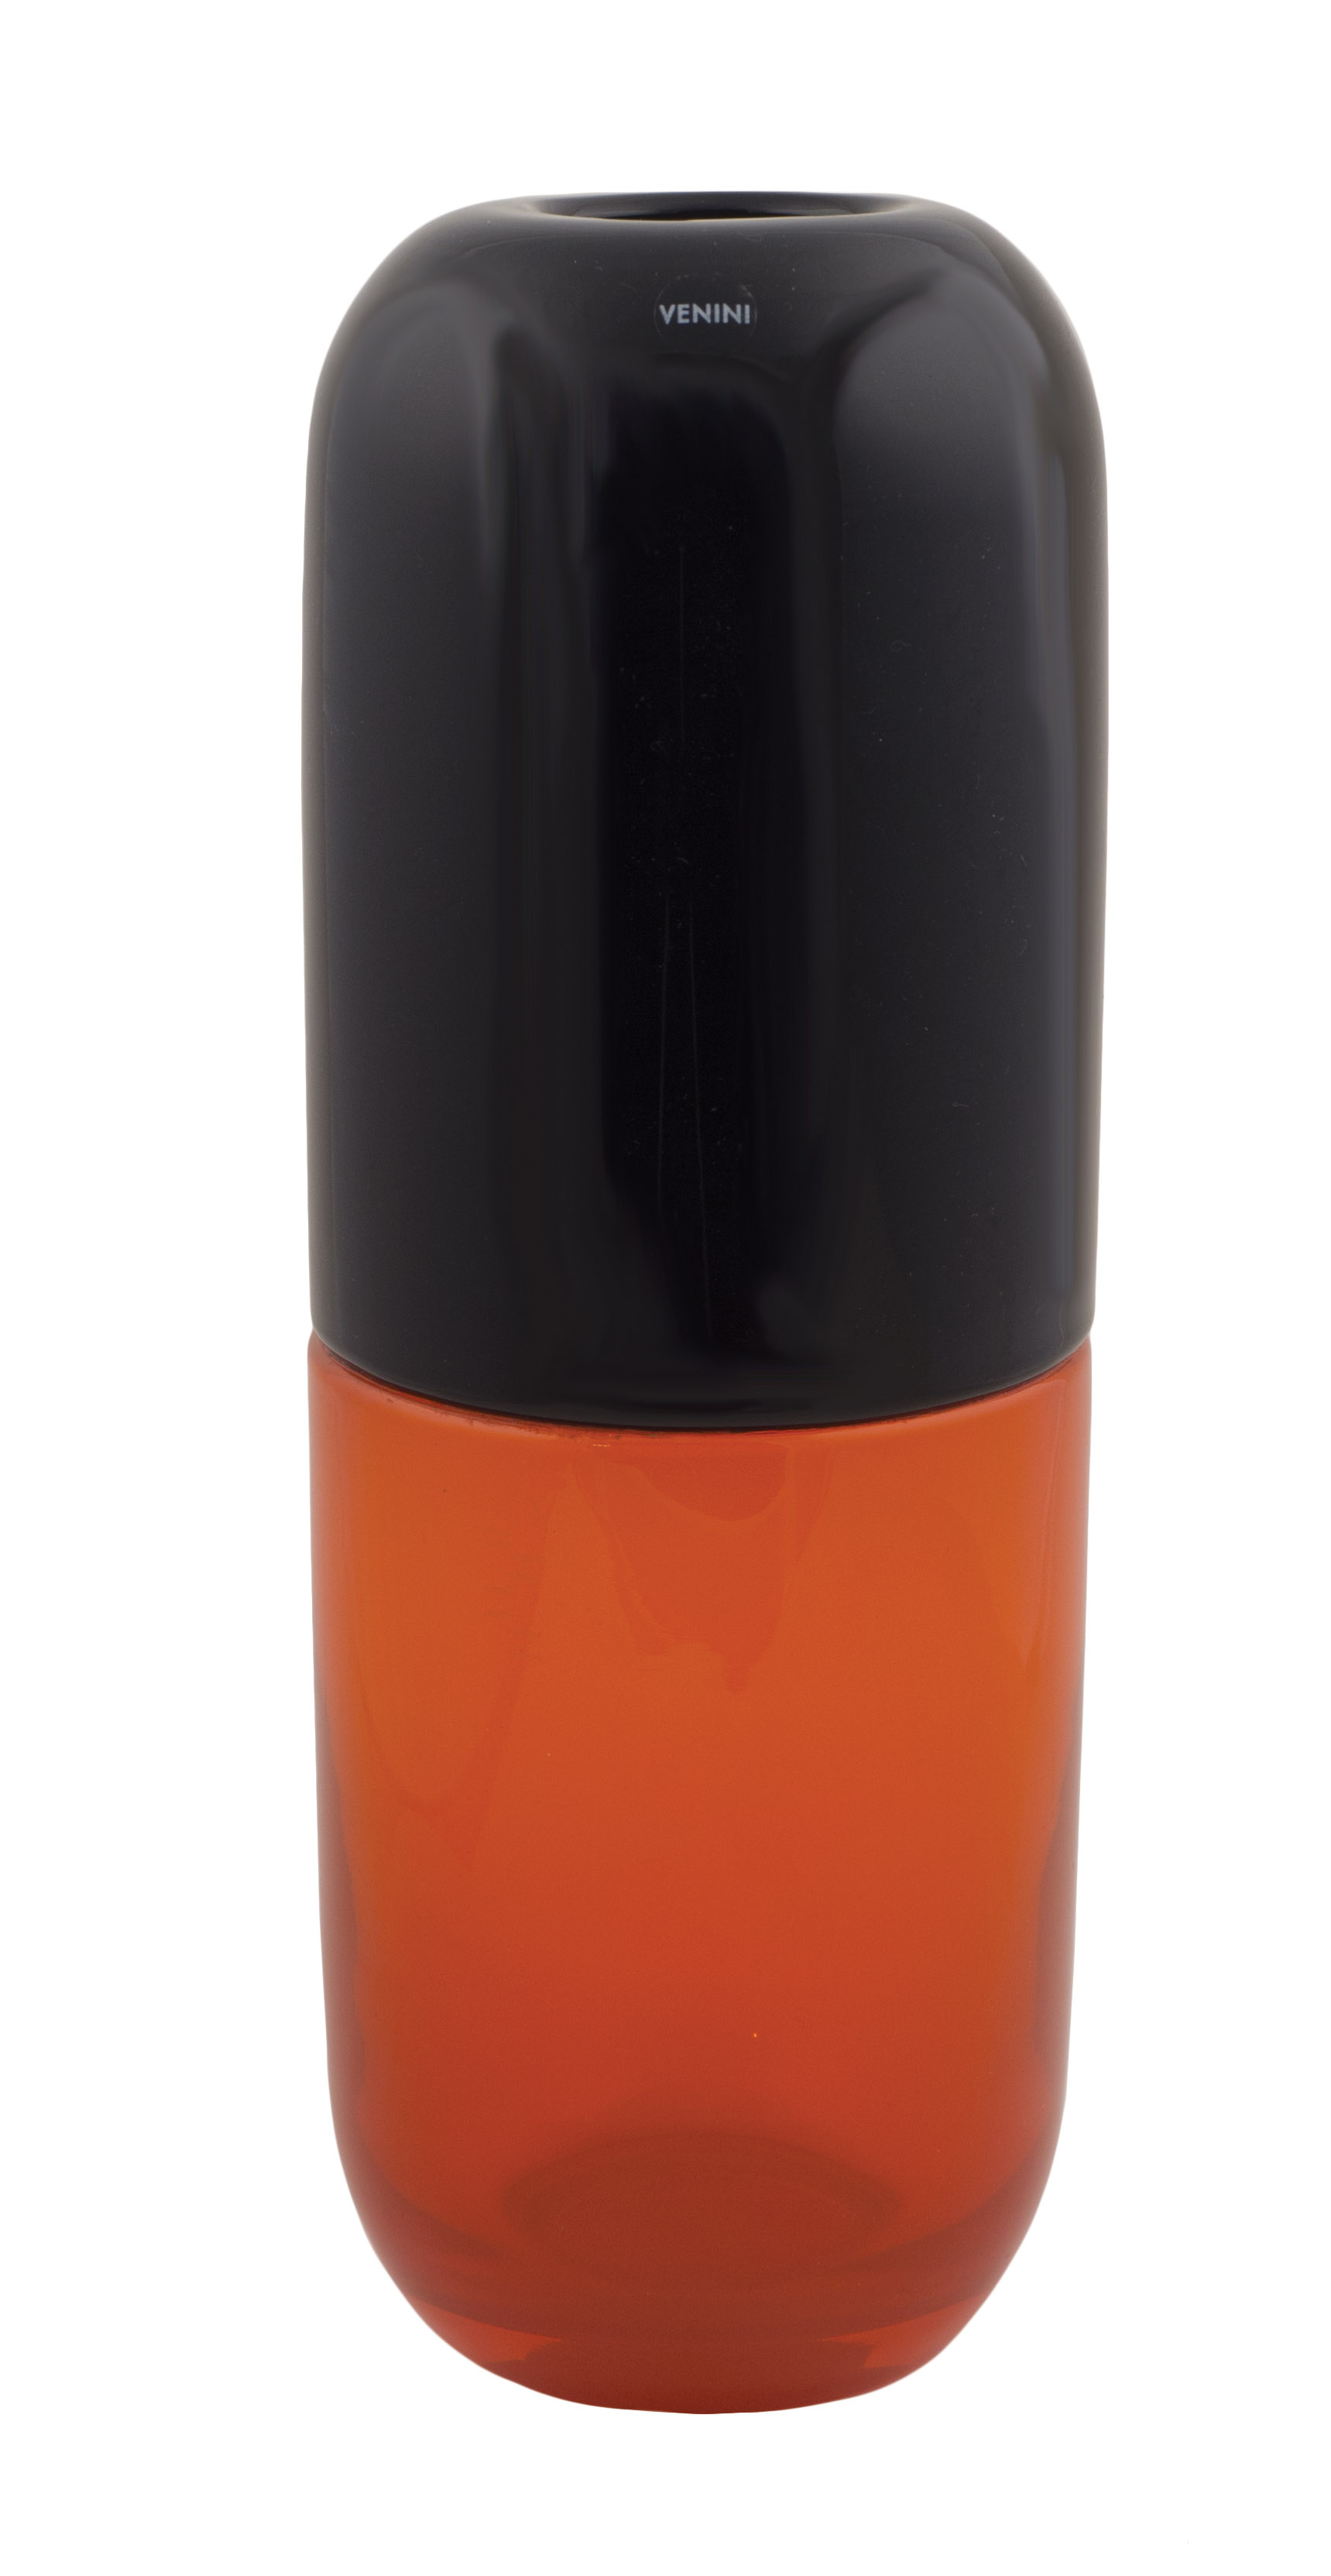 A Venini "happy pills" vase Fabio Novembre, 2012 33 cm. coloured black and orange, signed and